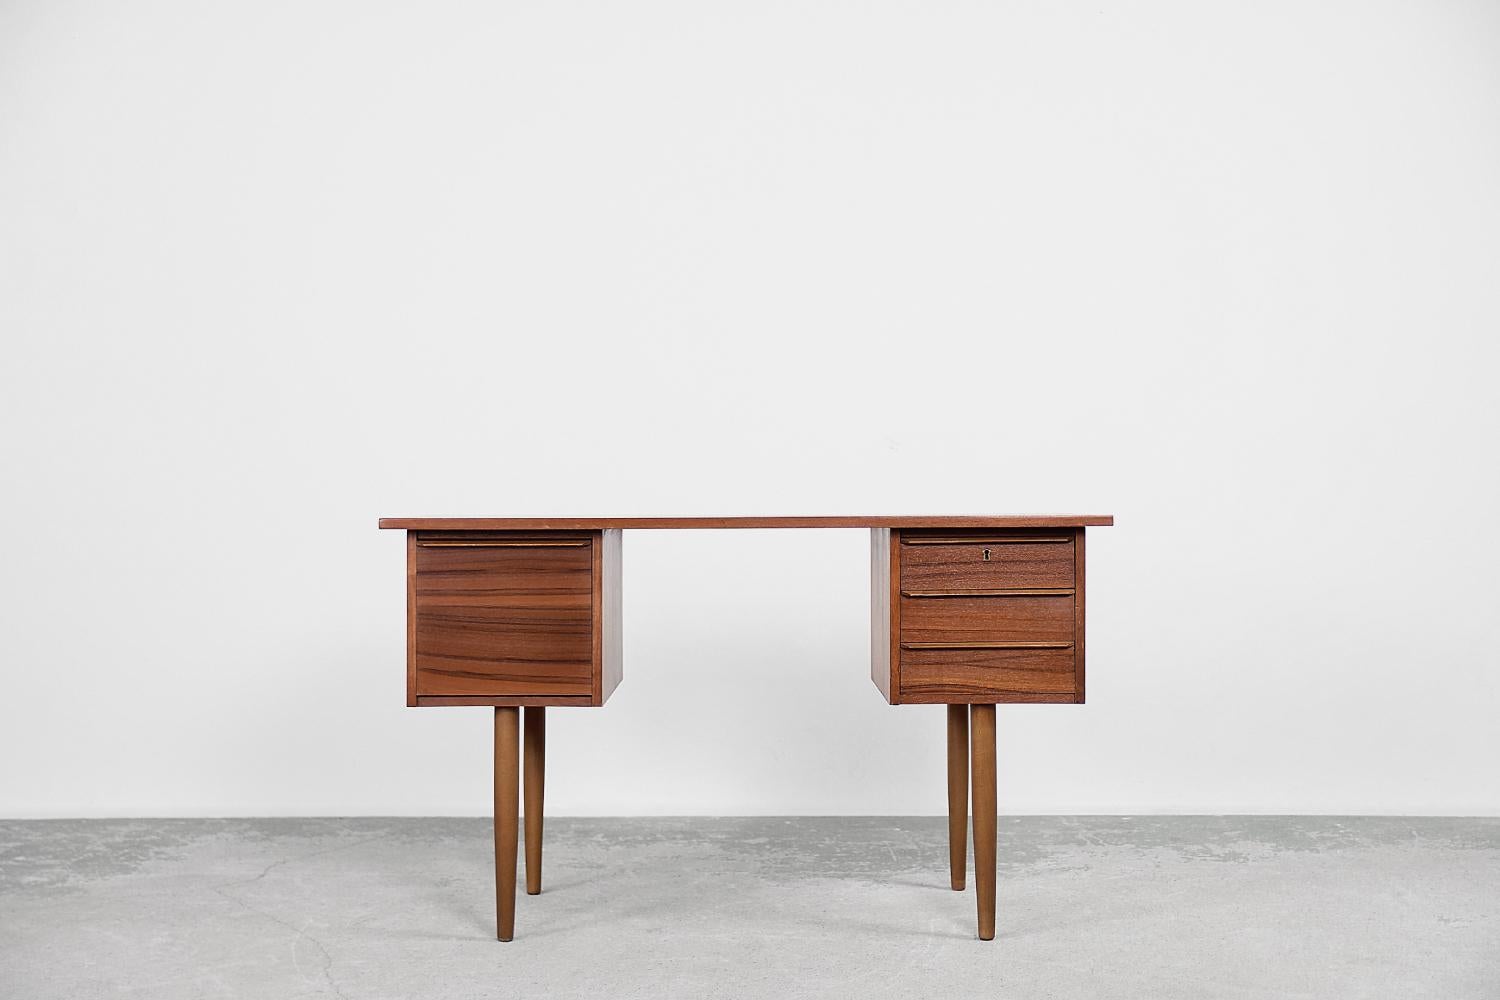 Dieser klassische Schreibtisch wurde in den 1960er Jahren in Schweden hergestellt. Er ist aus Teakholz in einem warmen Braunton mit sichtbarer Maserung gefertigt. Der Schreibtisch hat drei kleinere, flache Schubladen, die auf einer Seite mit einem